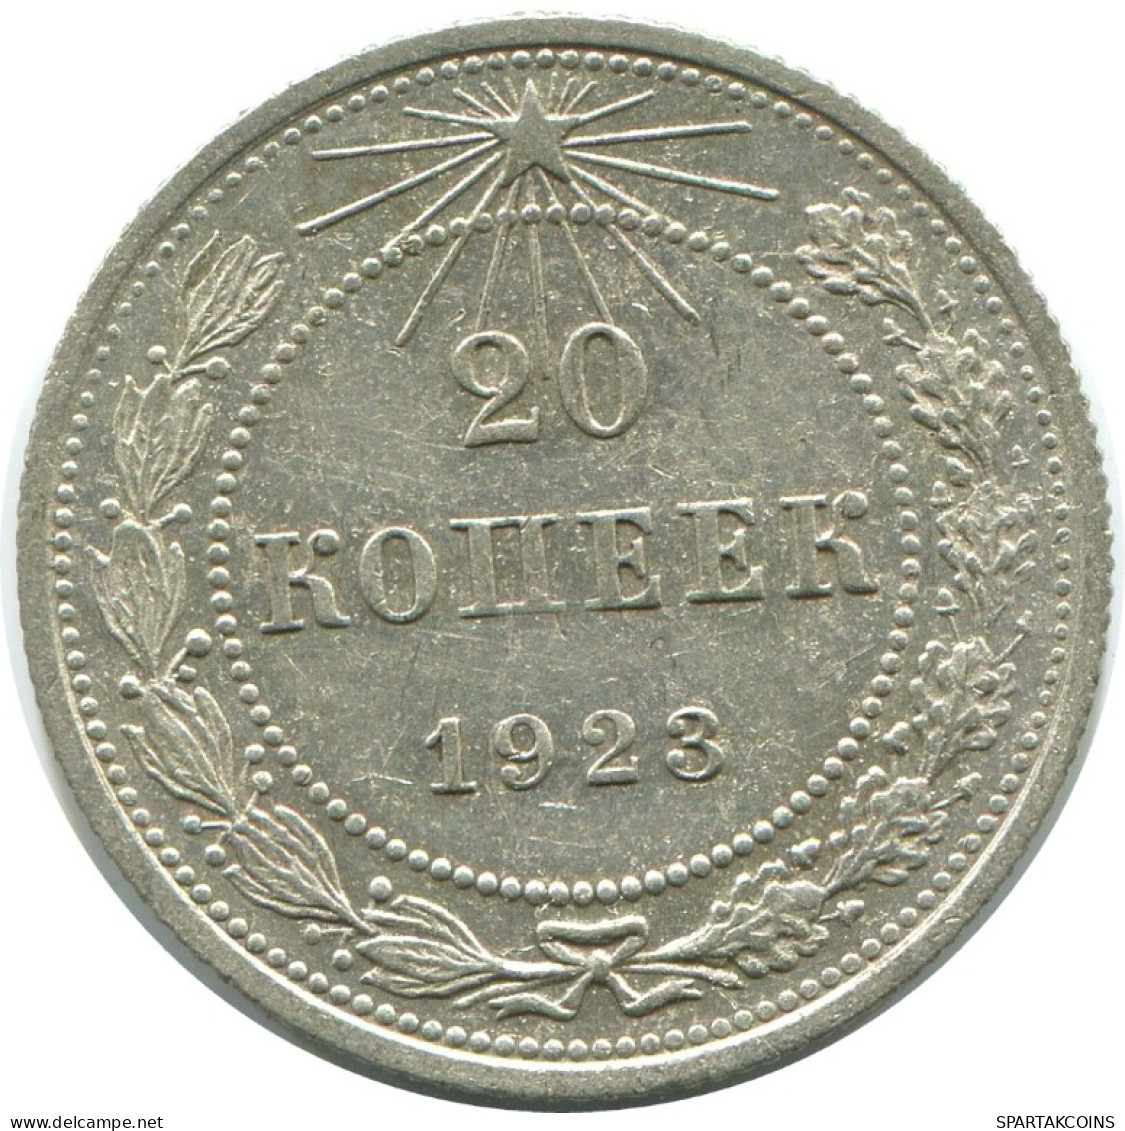 20 KOPEKS 1923 RUSSIA RSFSR SILVER Coin HIGH GRADE #AF554.4.U.A - Rusland